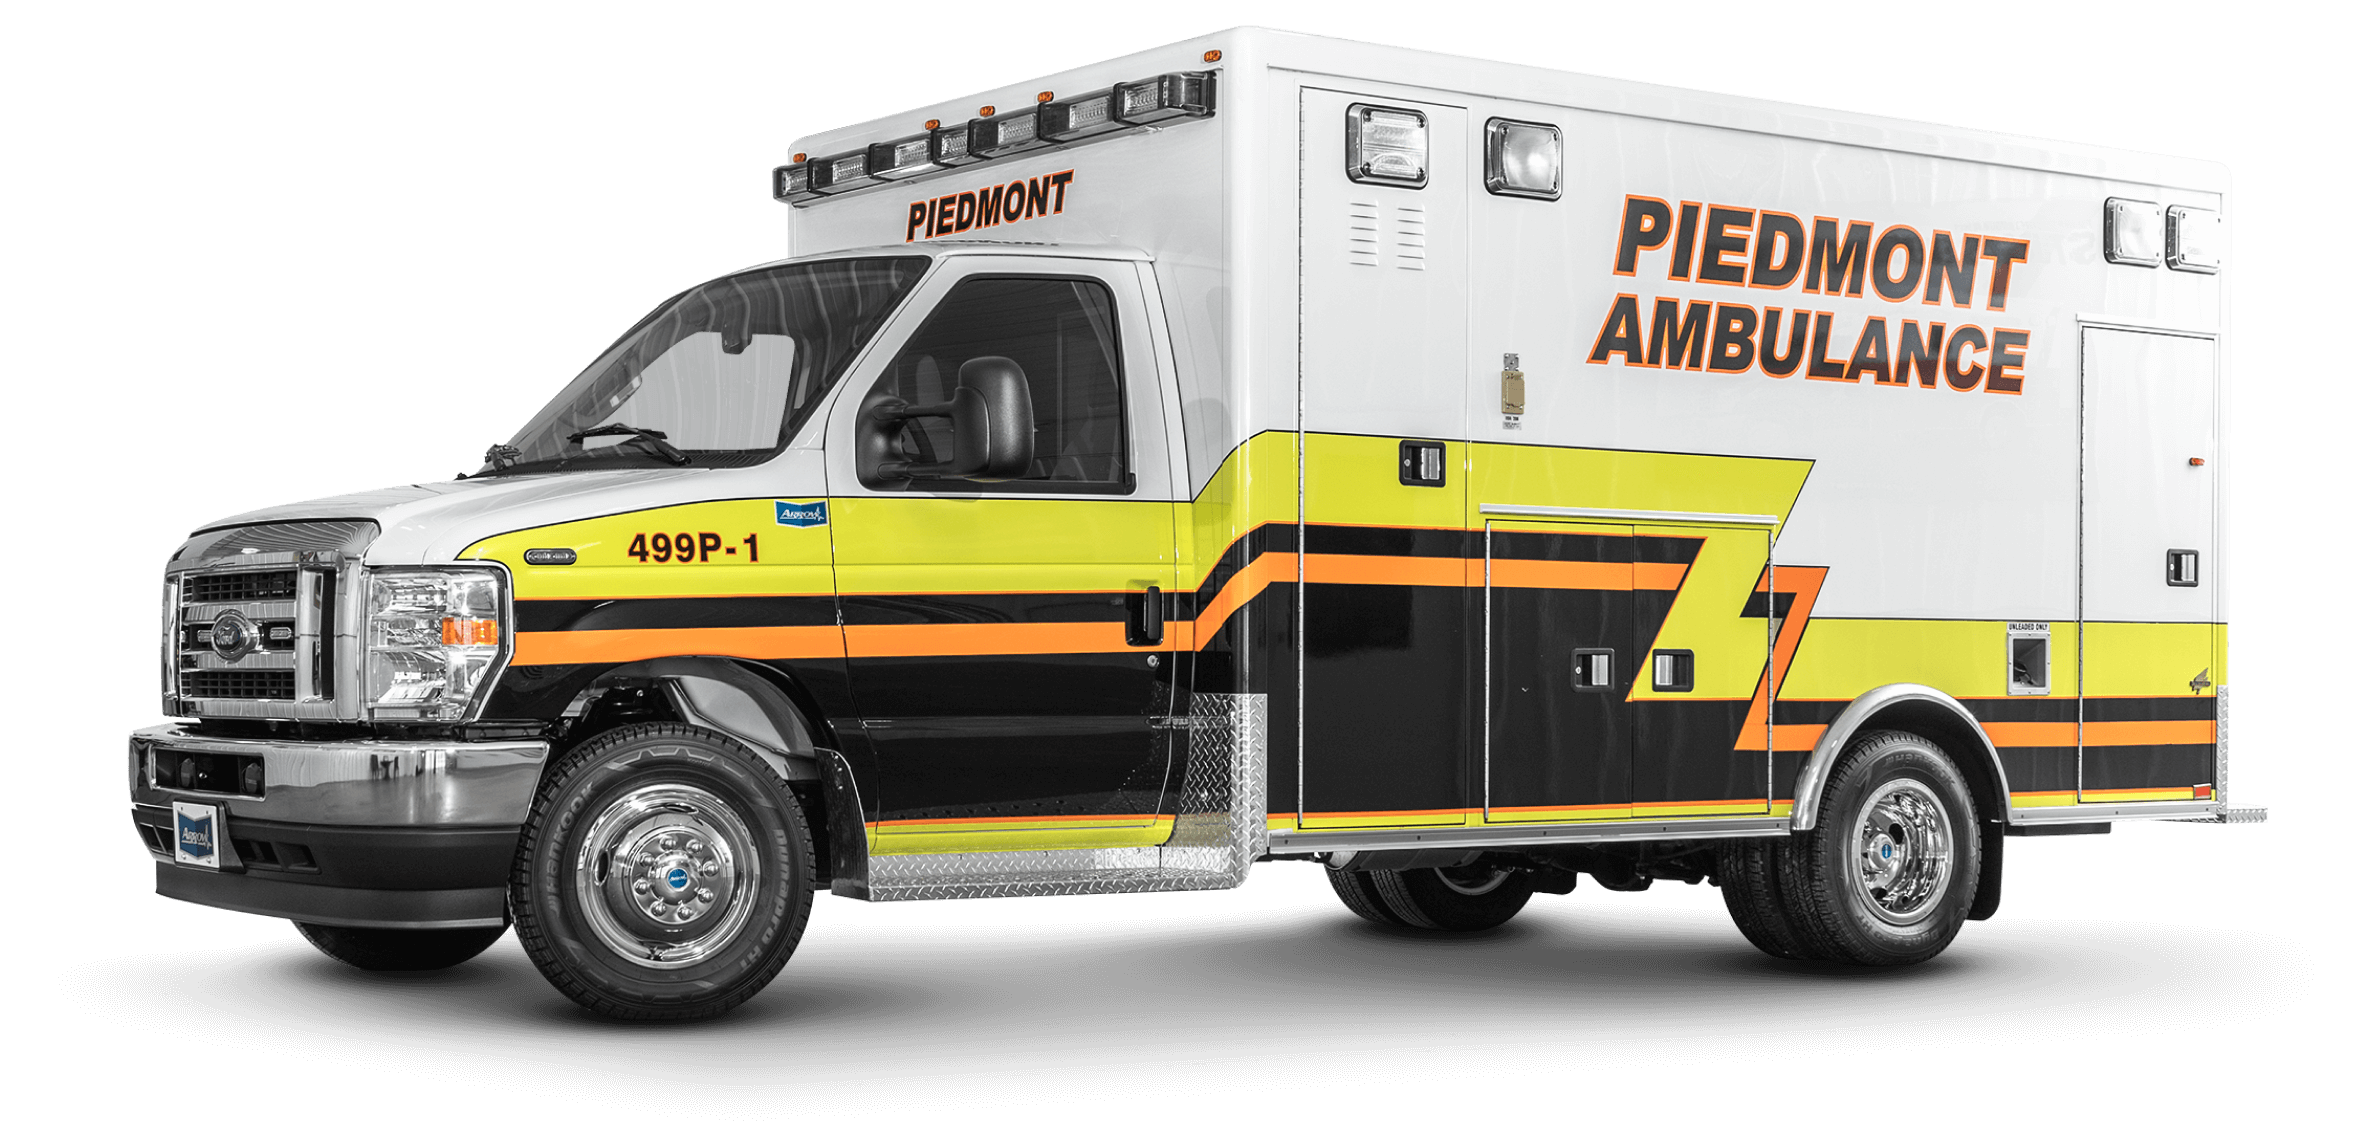 Piedmont Ambulance Ford E450 Type 3 Ambulance